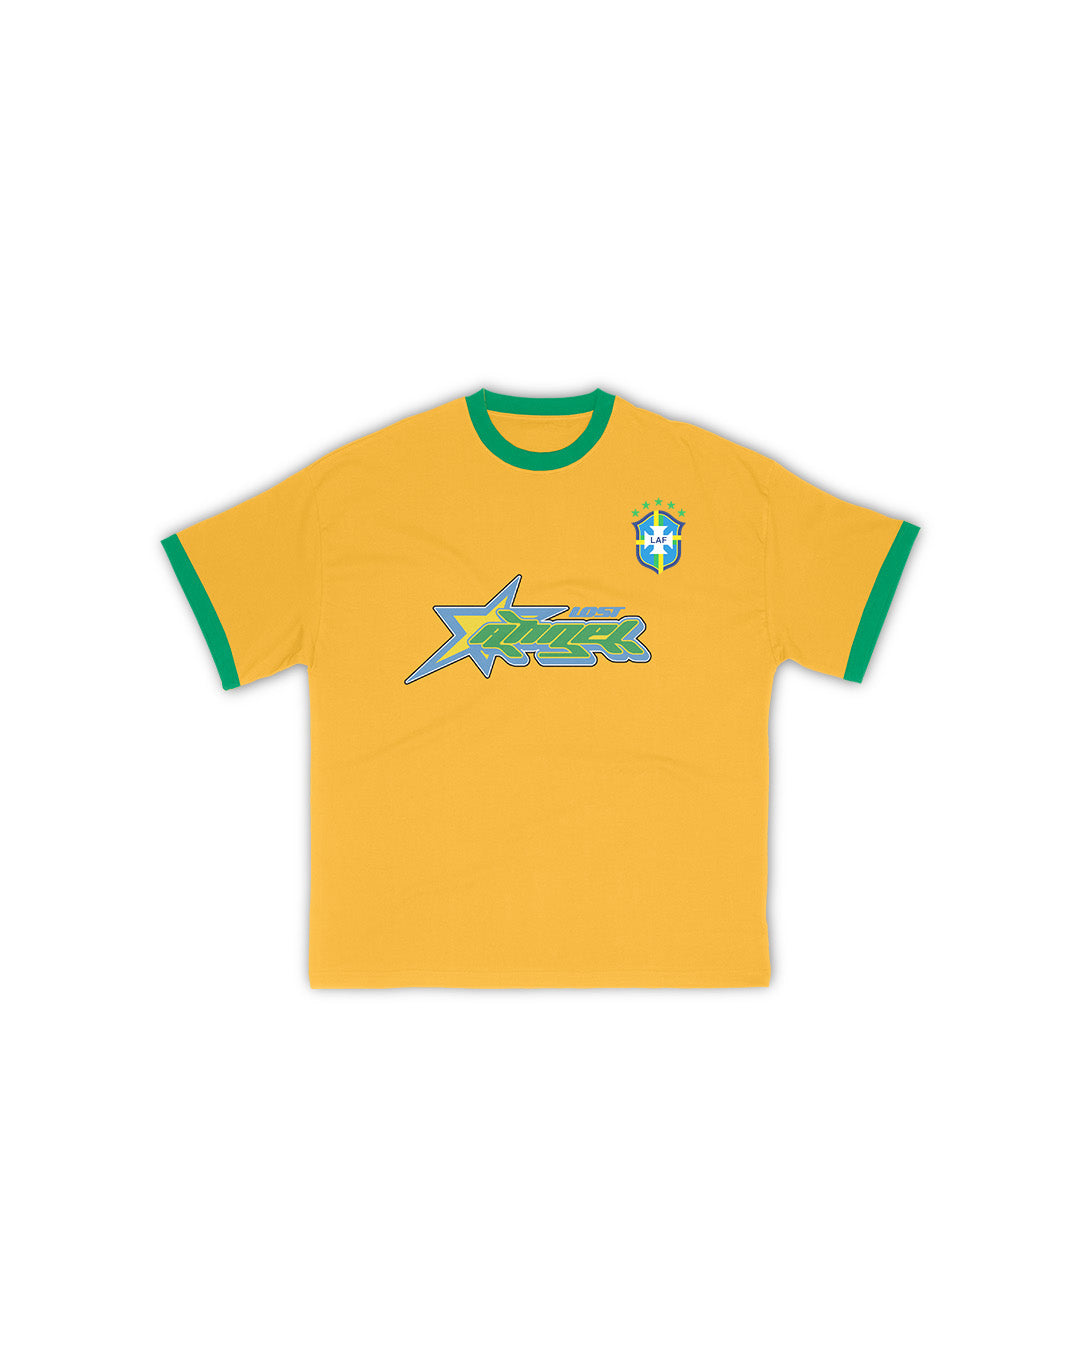 Brazil Yellow/Green Tee